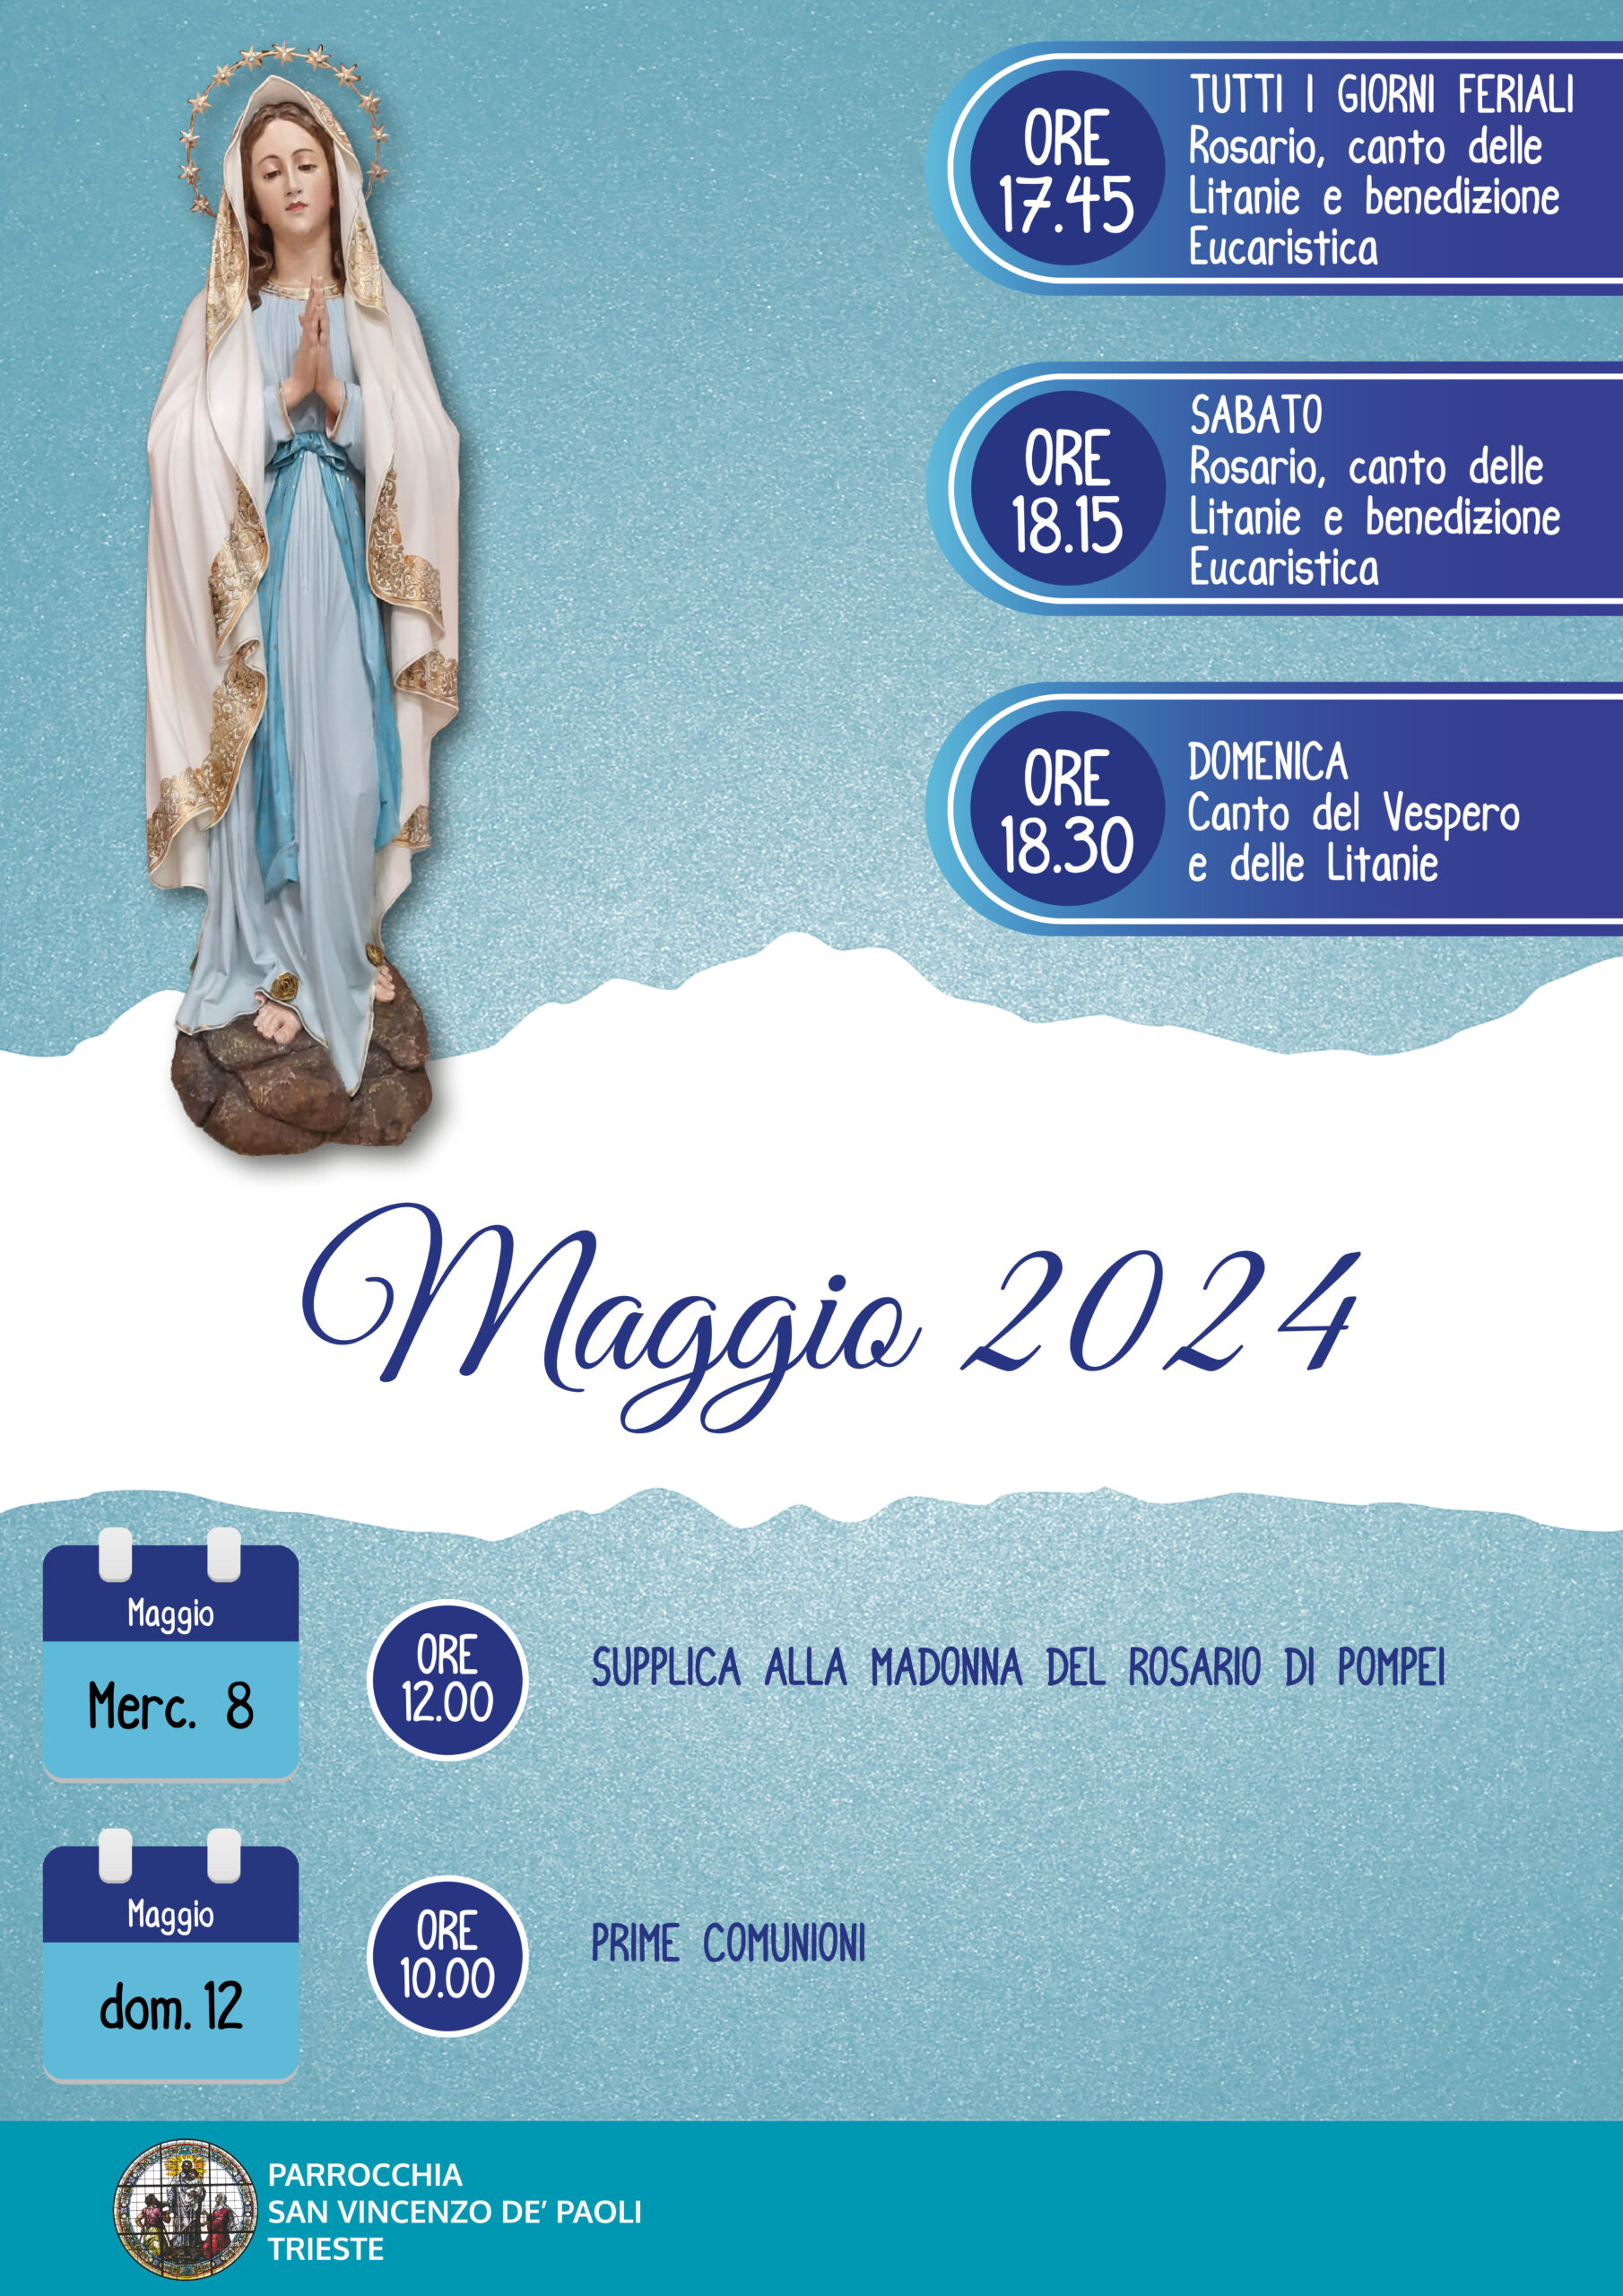 Mese di Maggio – Parrocchia San Vincenzo de' Paoli